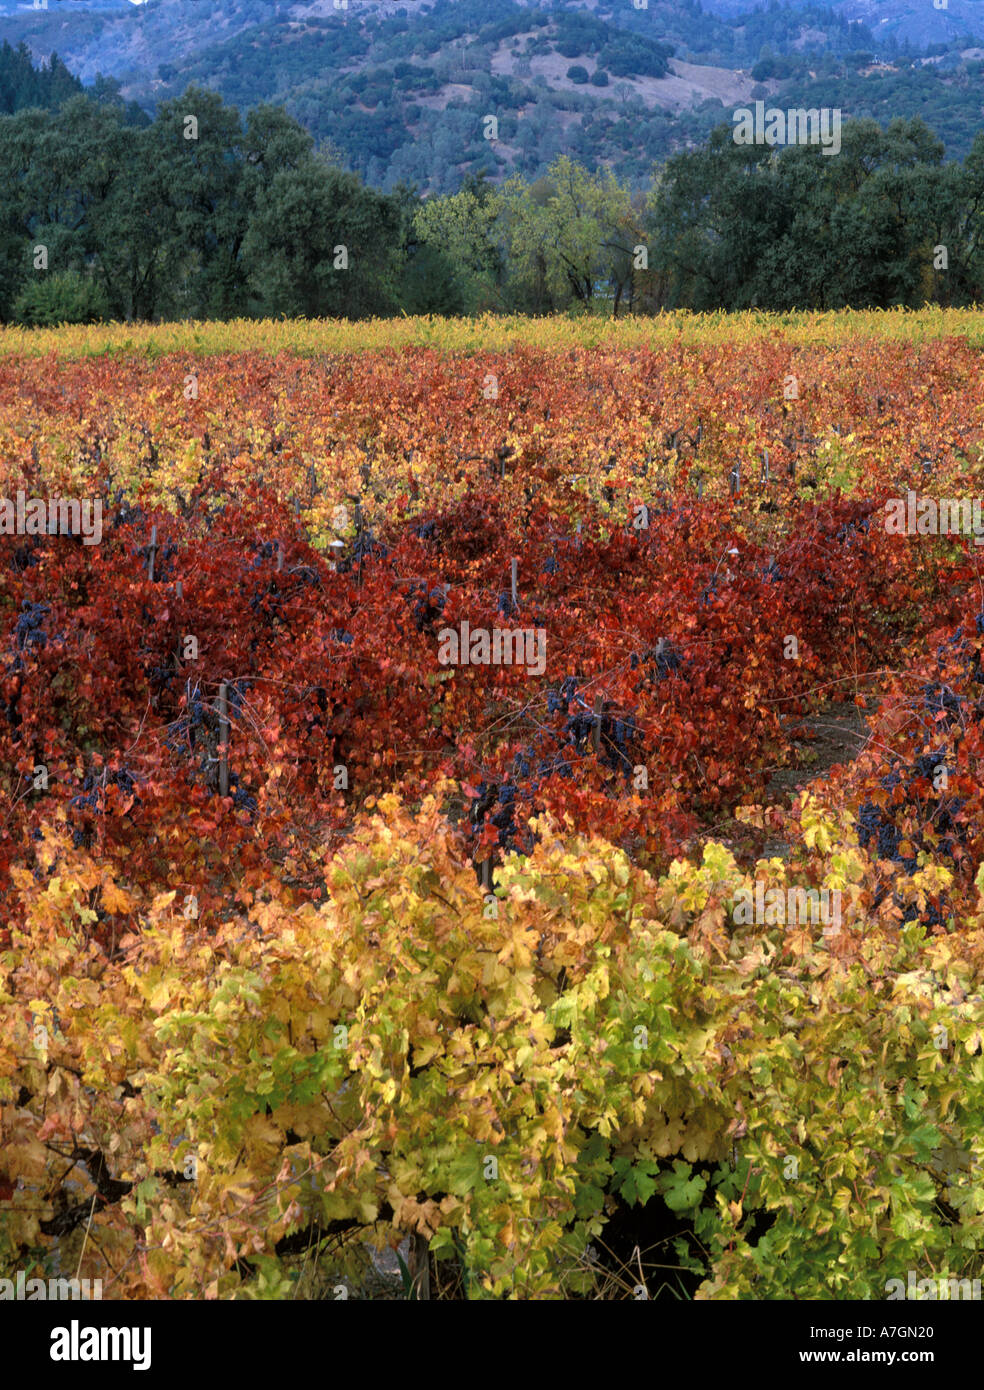 États-unis, Californie, Napa Valley, Calistoga. La couleur de l'automne sur de vieilles vignes de Barbera avec la maturation des raisins, près de Sterling Vineyards. Banque D'Images